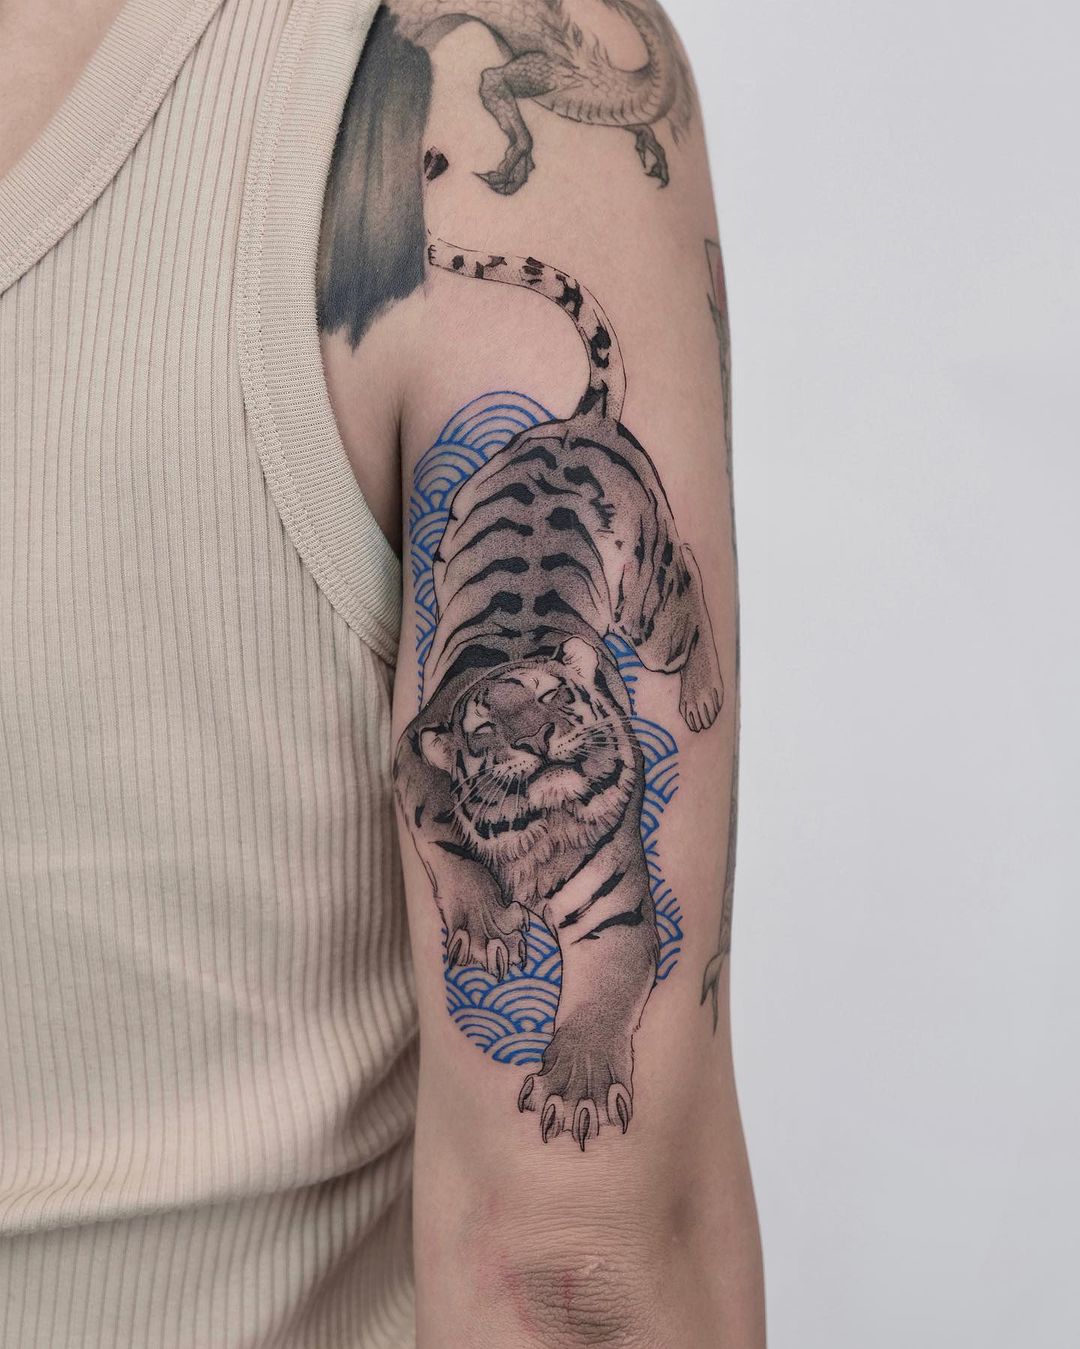 Amazing tiger tattoo by wilwang tatt